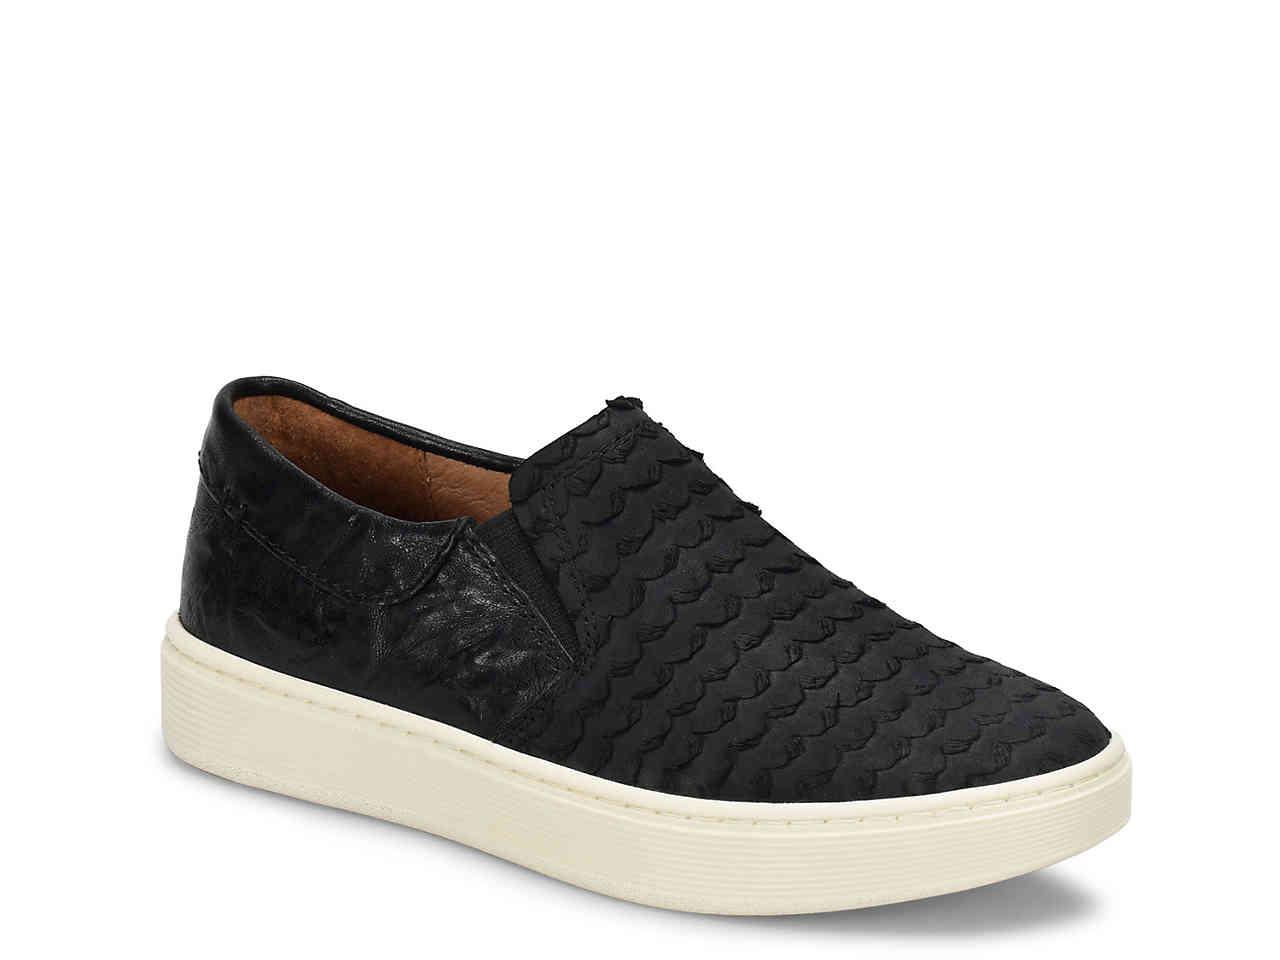 Söfft Leather Somers Iii Slip-on Sneaker in Black - Lyst